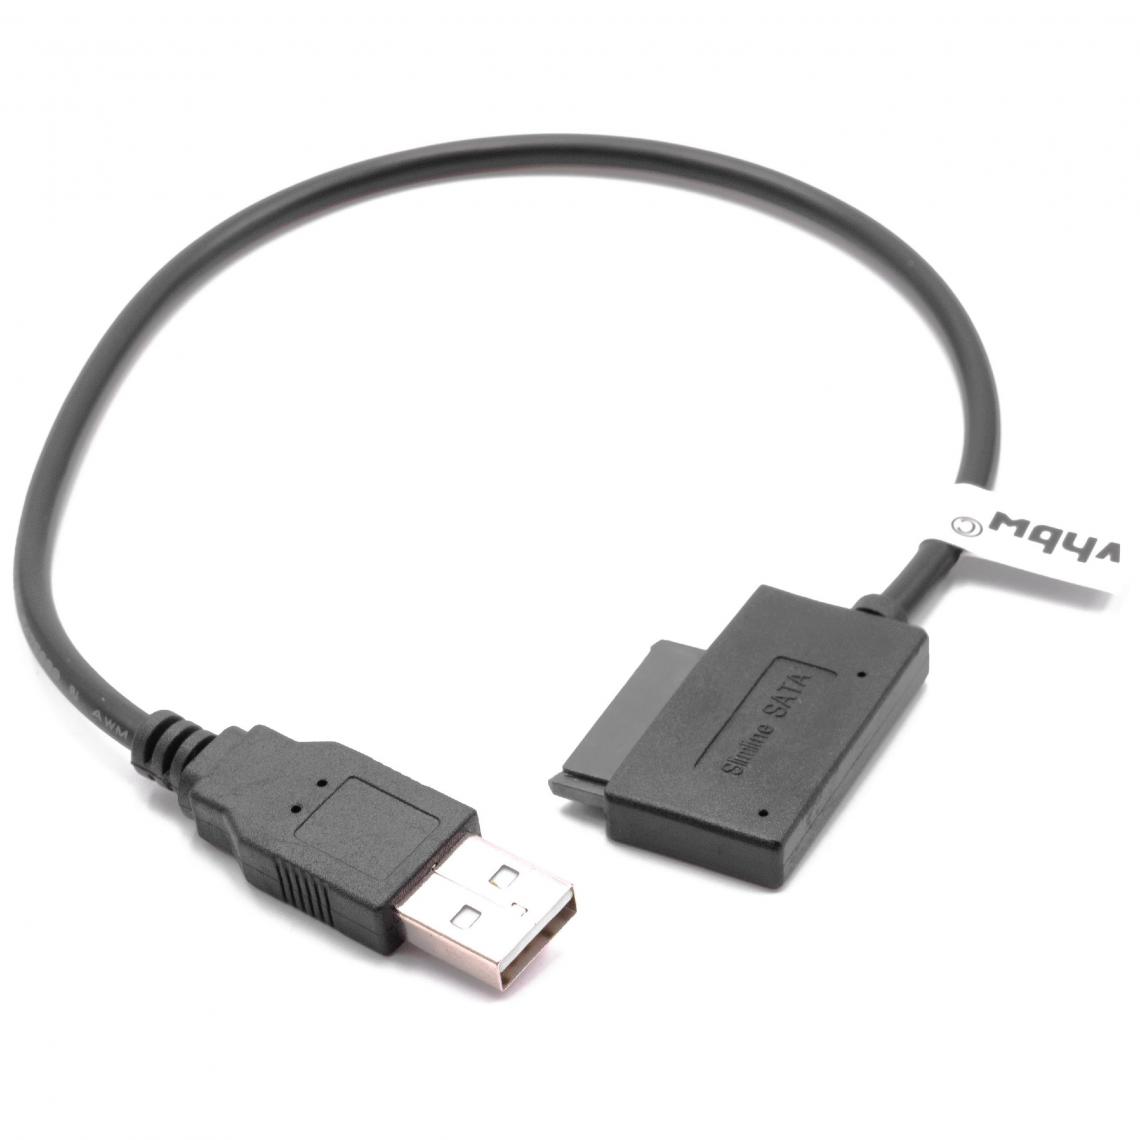 Vhbw - vhbw Slimline SATA II 13 vers Lecteur USB de CD DVD Câble adaptateur - Accessoires alimentation